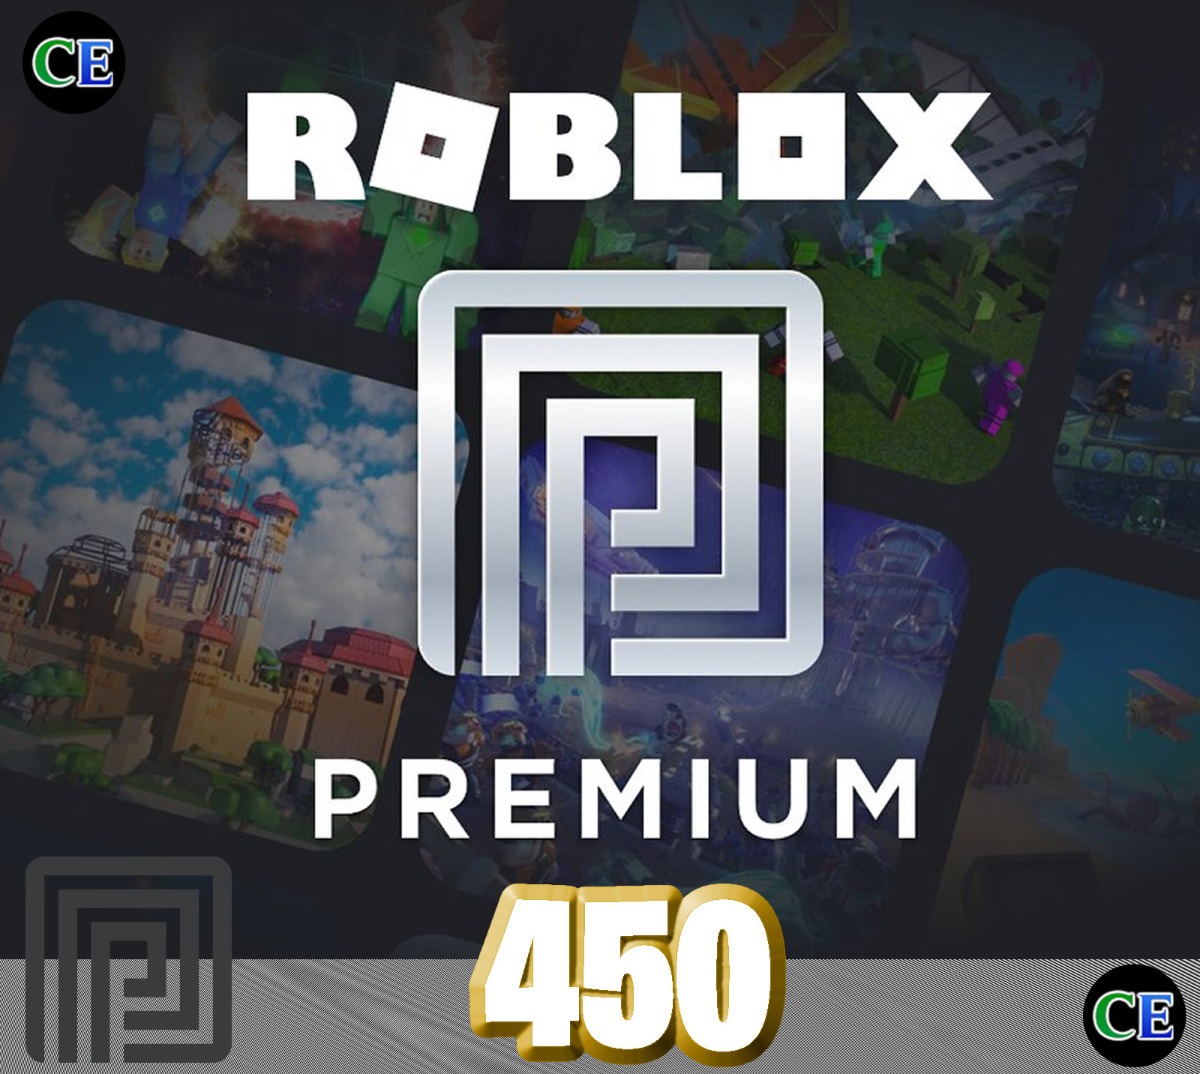 Roblox Premium 450 Robux Mes Entrega Inmediata 730 00 En - roblox juego para pc en mercado libre argentina